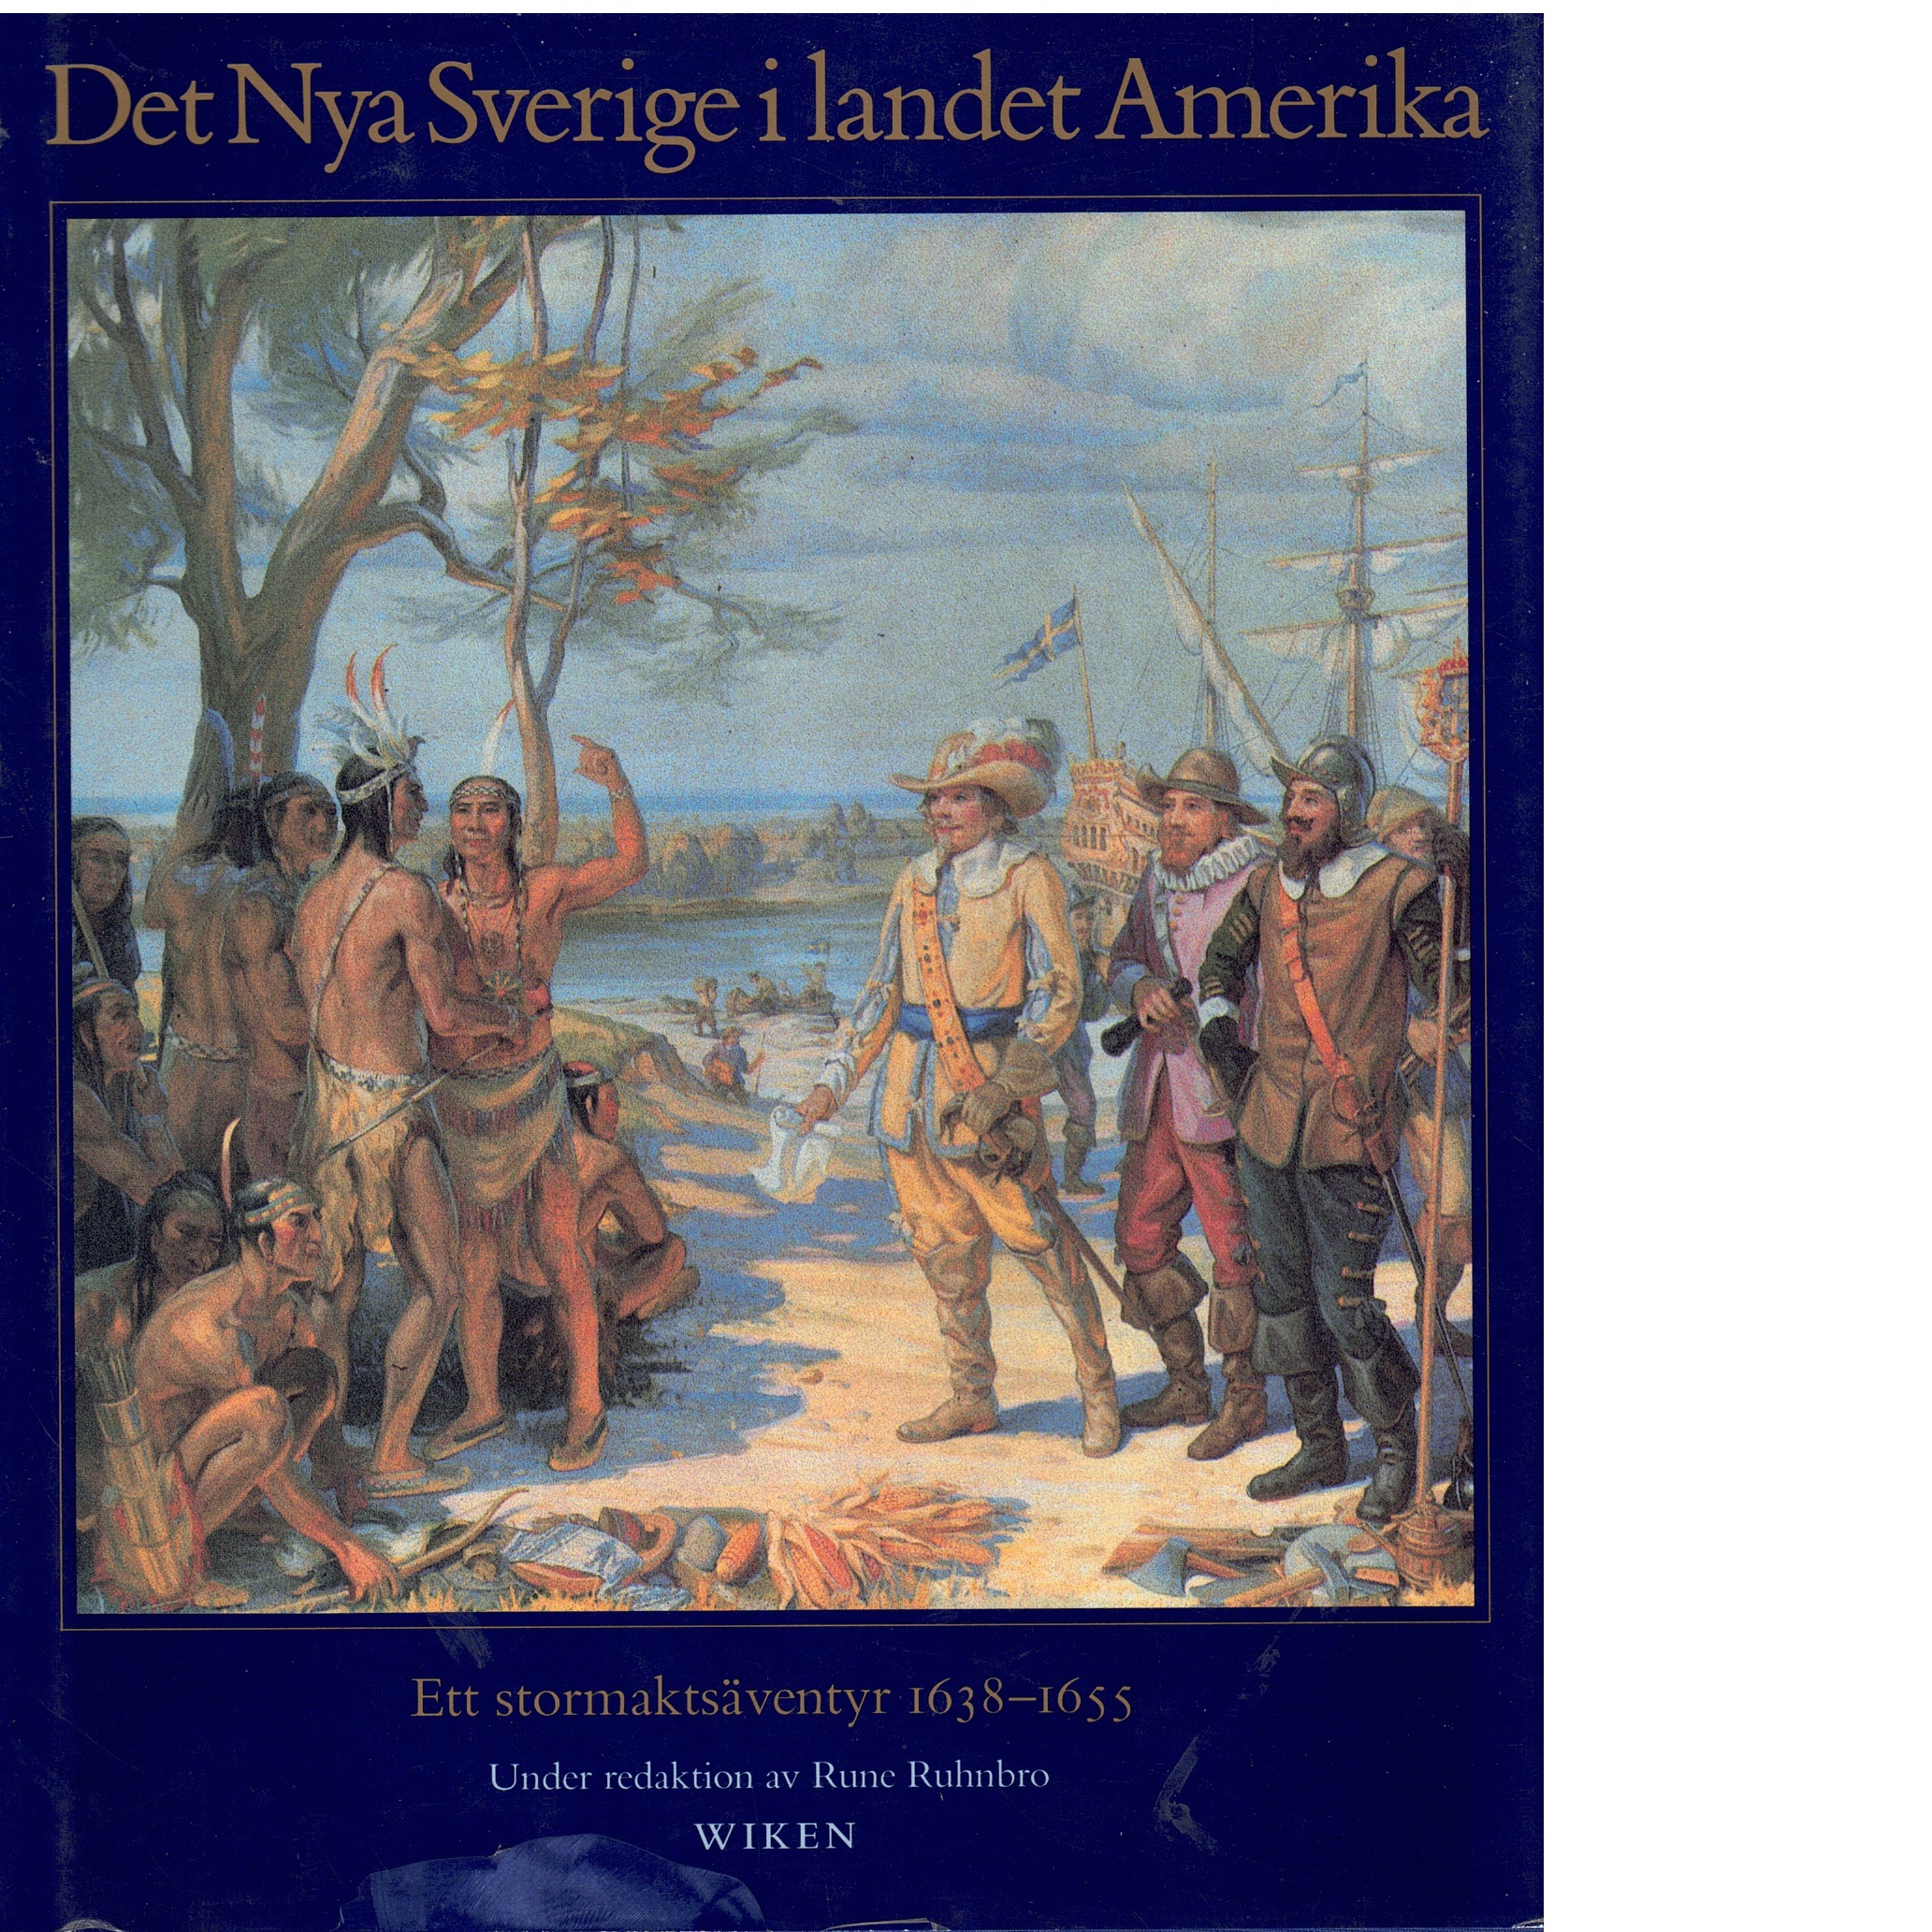 Det Nya Sverige i landet Amerika : ett stormaktsäventyr 1638-1655 - Ruhnbro, Rune